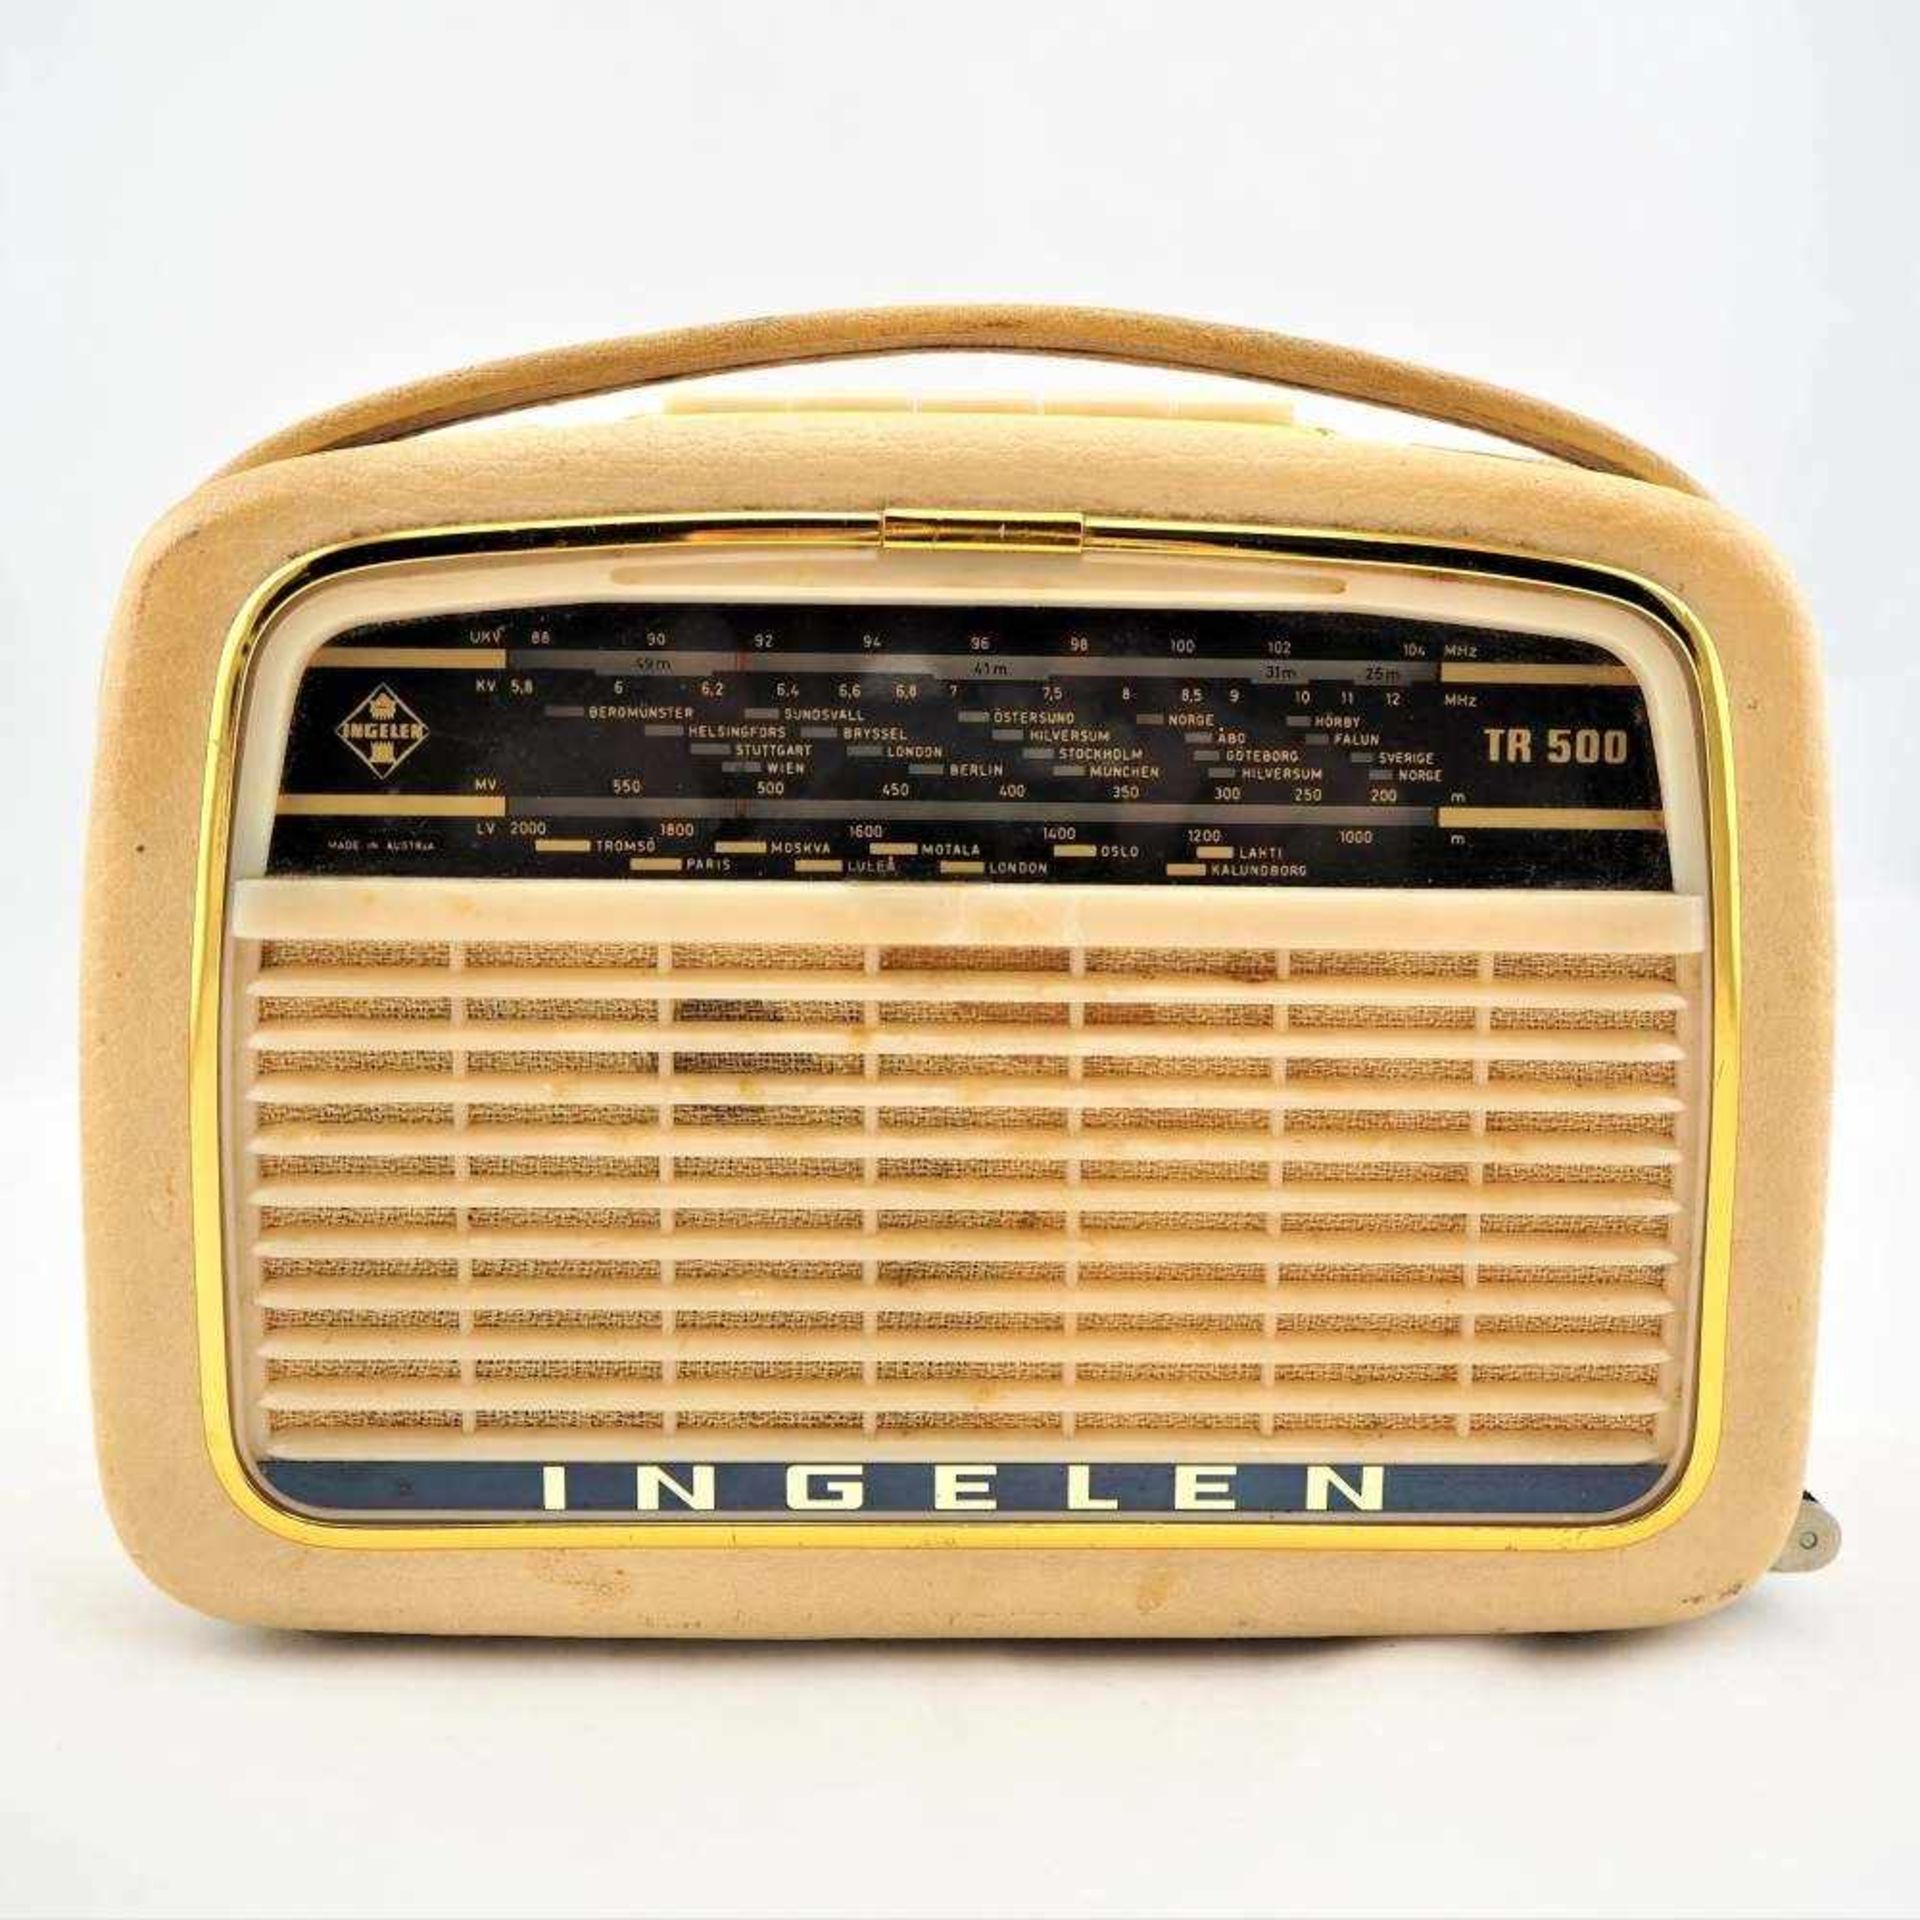 Kofferradio, 50er JahreTragbares Kofferradio der Marke "Ingelen", Typ TR. 500. Stabiles Gehäuse